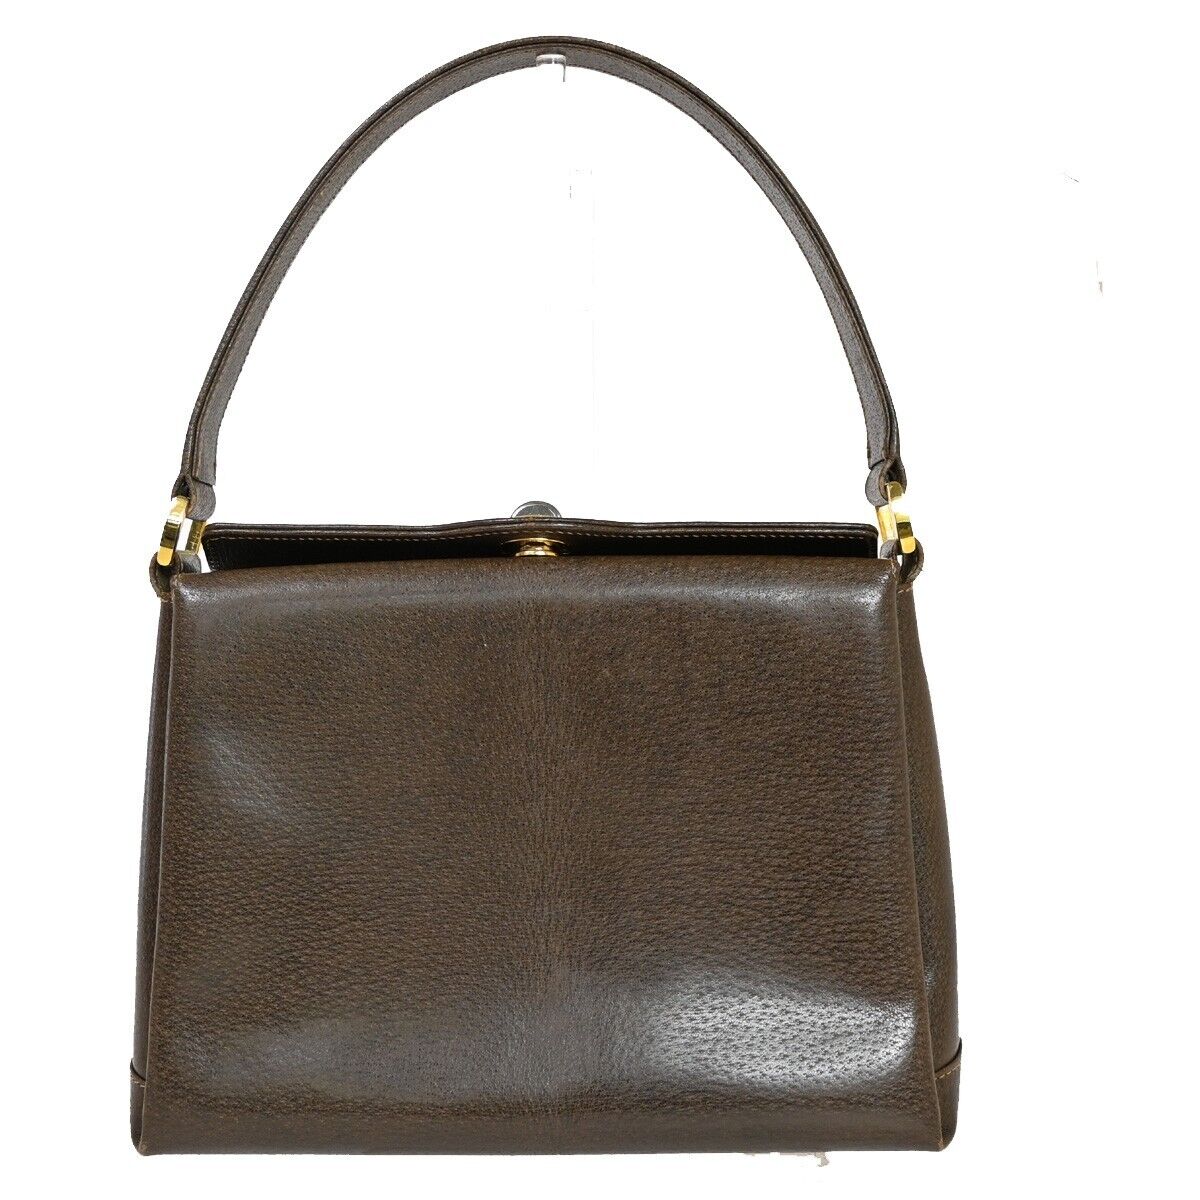 Gucci Brown Leather Shoulder Bag ()